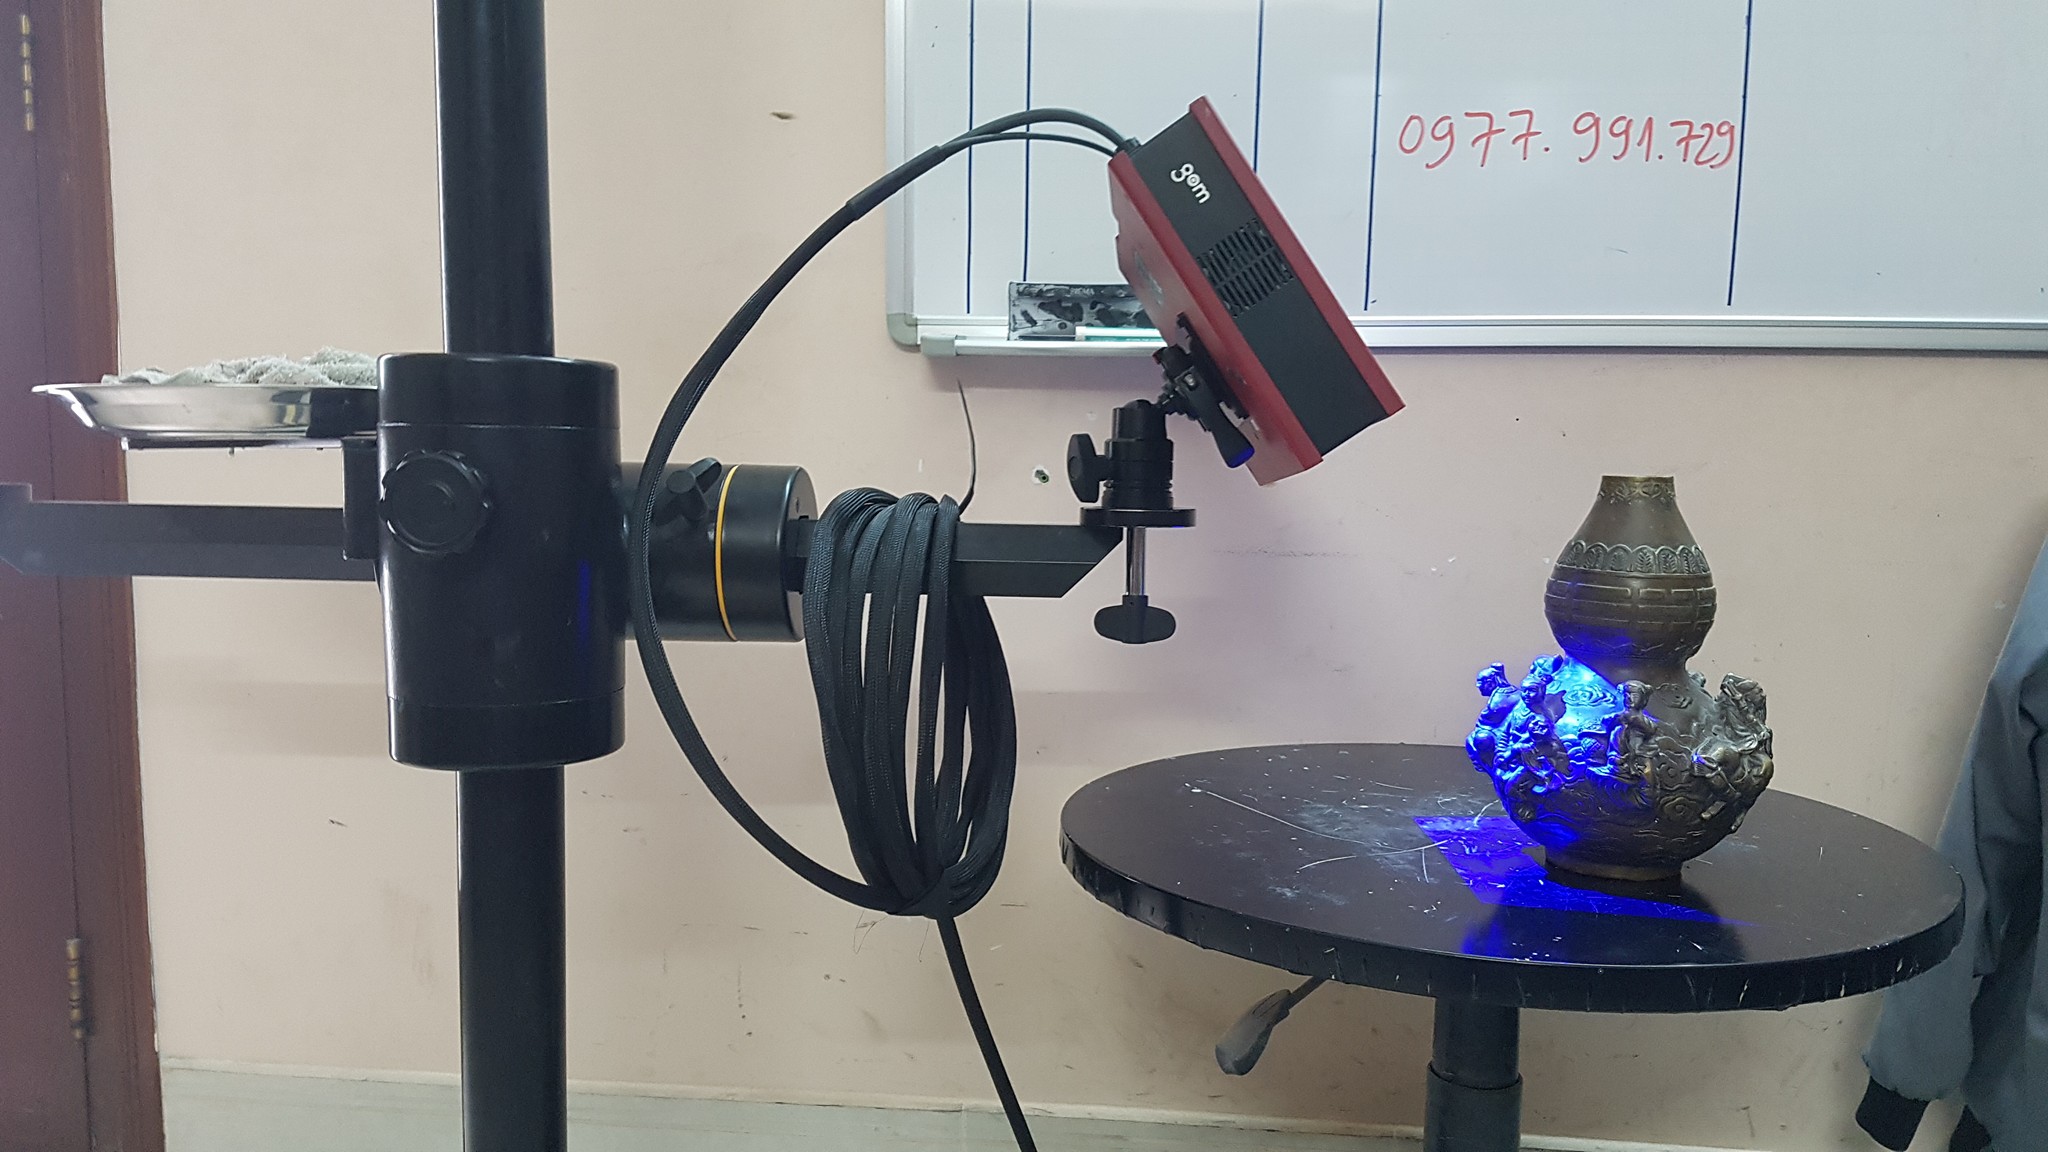 Dịch vụ scan 3D ( Dịch vụ quét 3D) tại Thành phố Hồ Chí Minh.